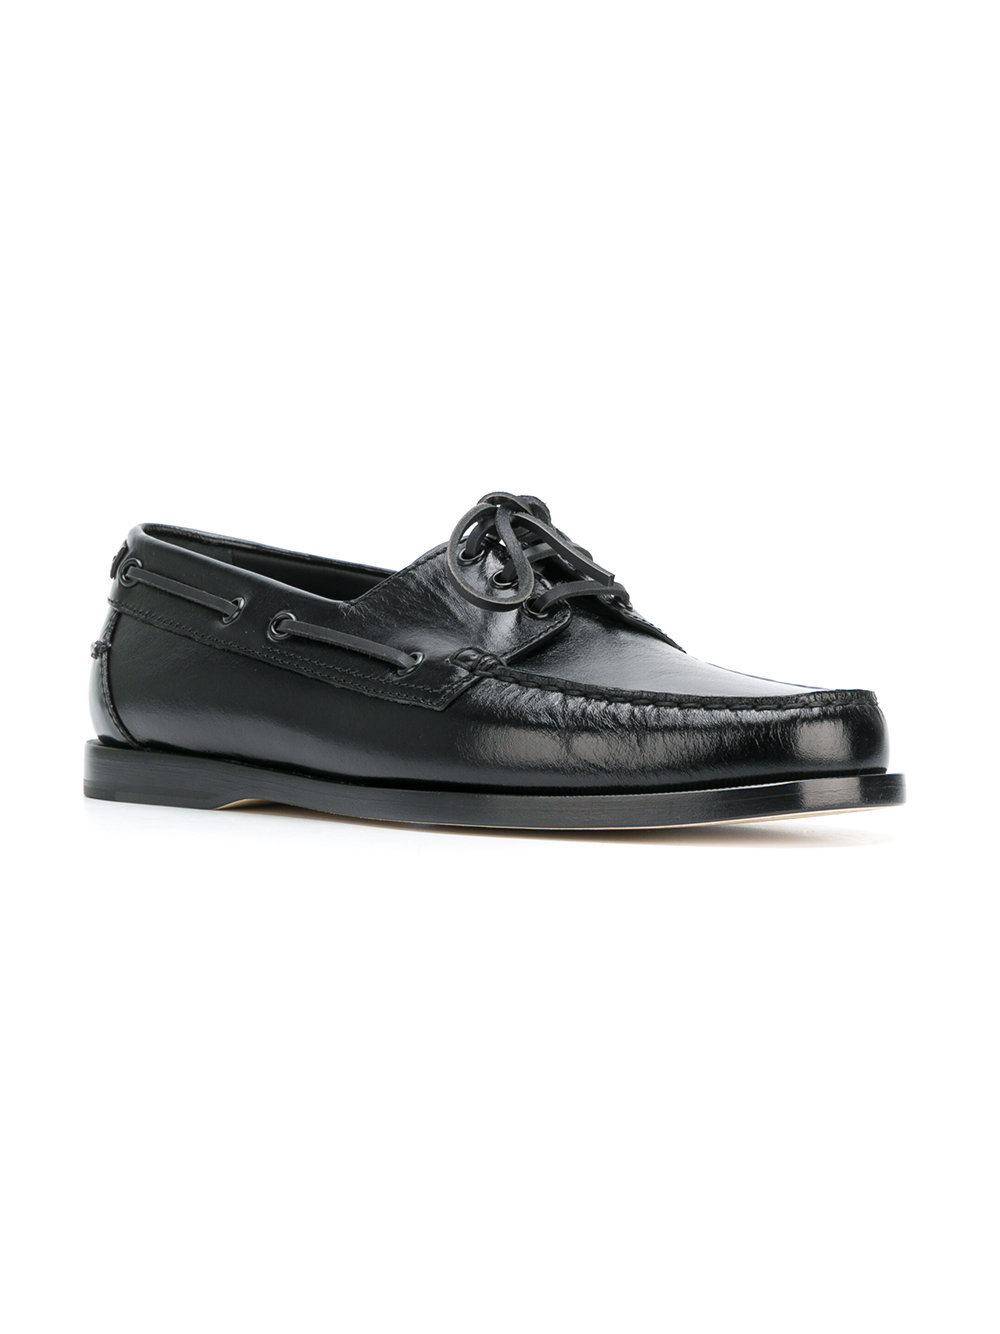 black deck shoes